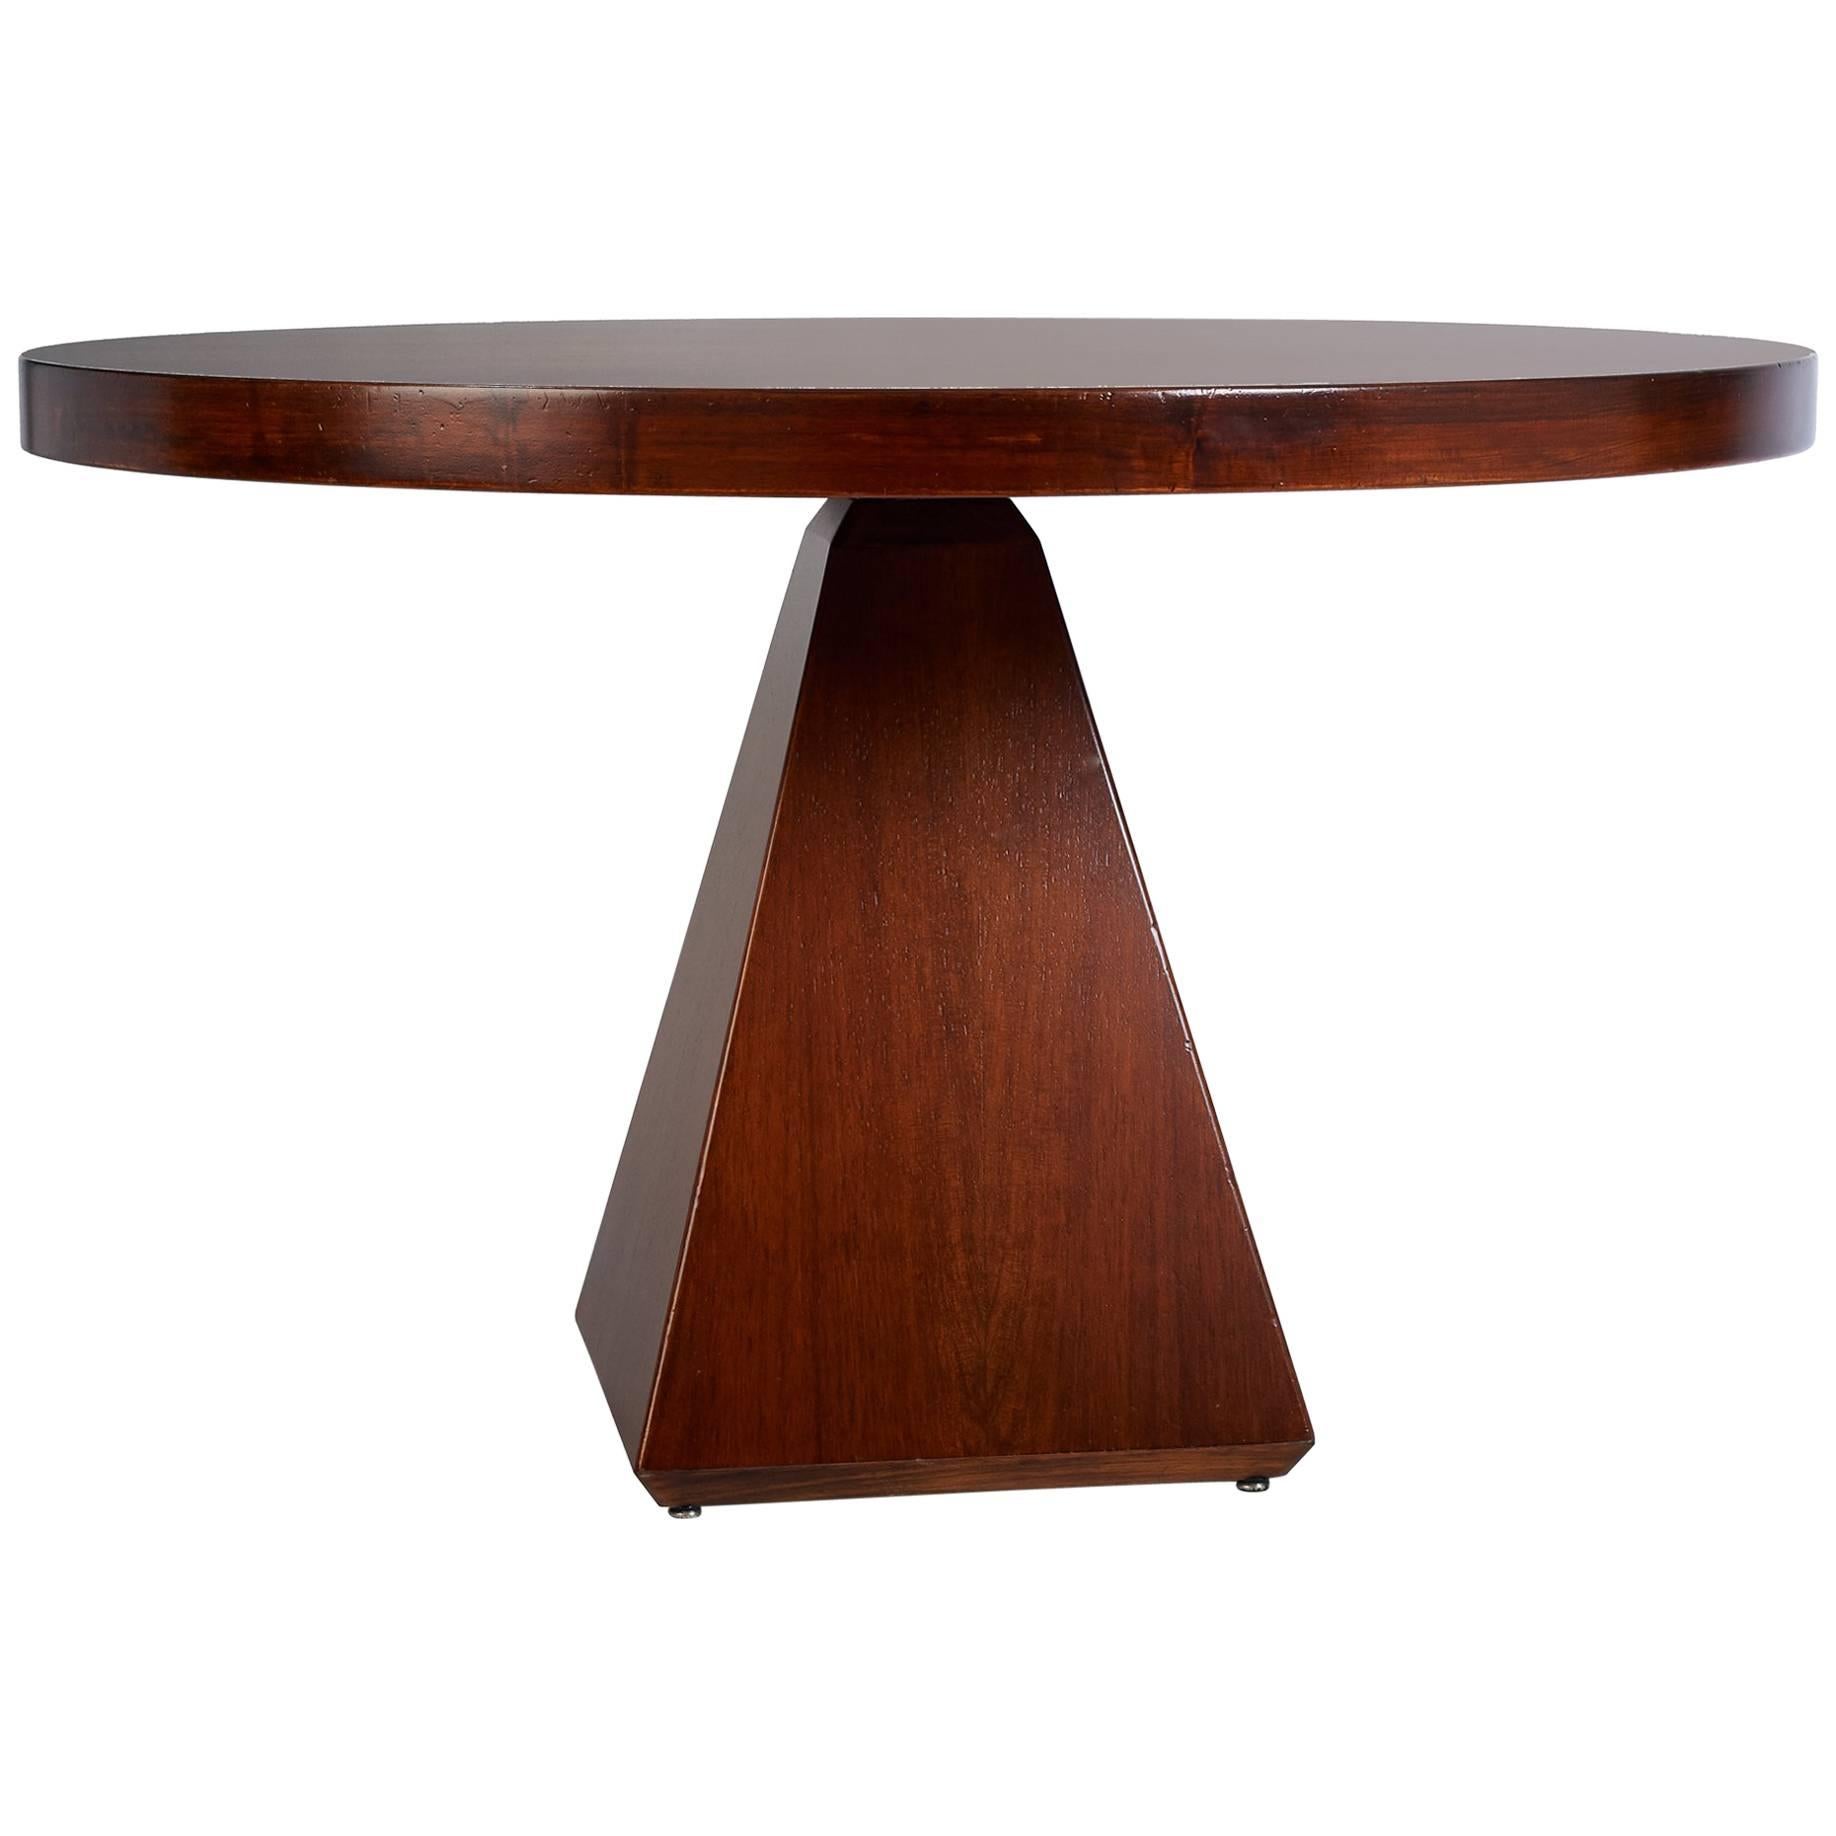 Vittorio Introini (1935 - 2023)

Une table de salle à manger géométrique saisissante, créée par l'architecte et designer milanais Vittorio Introini, pour Saporiti. Avec un épais plateau rond reposant sur une base pyramidale spectaculaire avec une